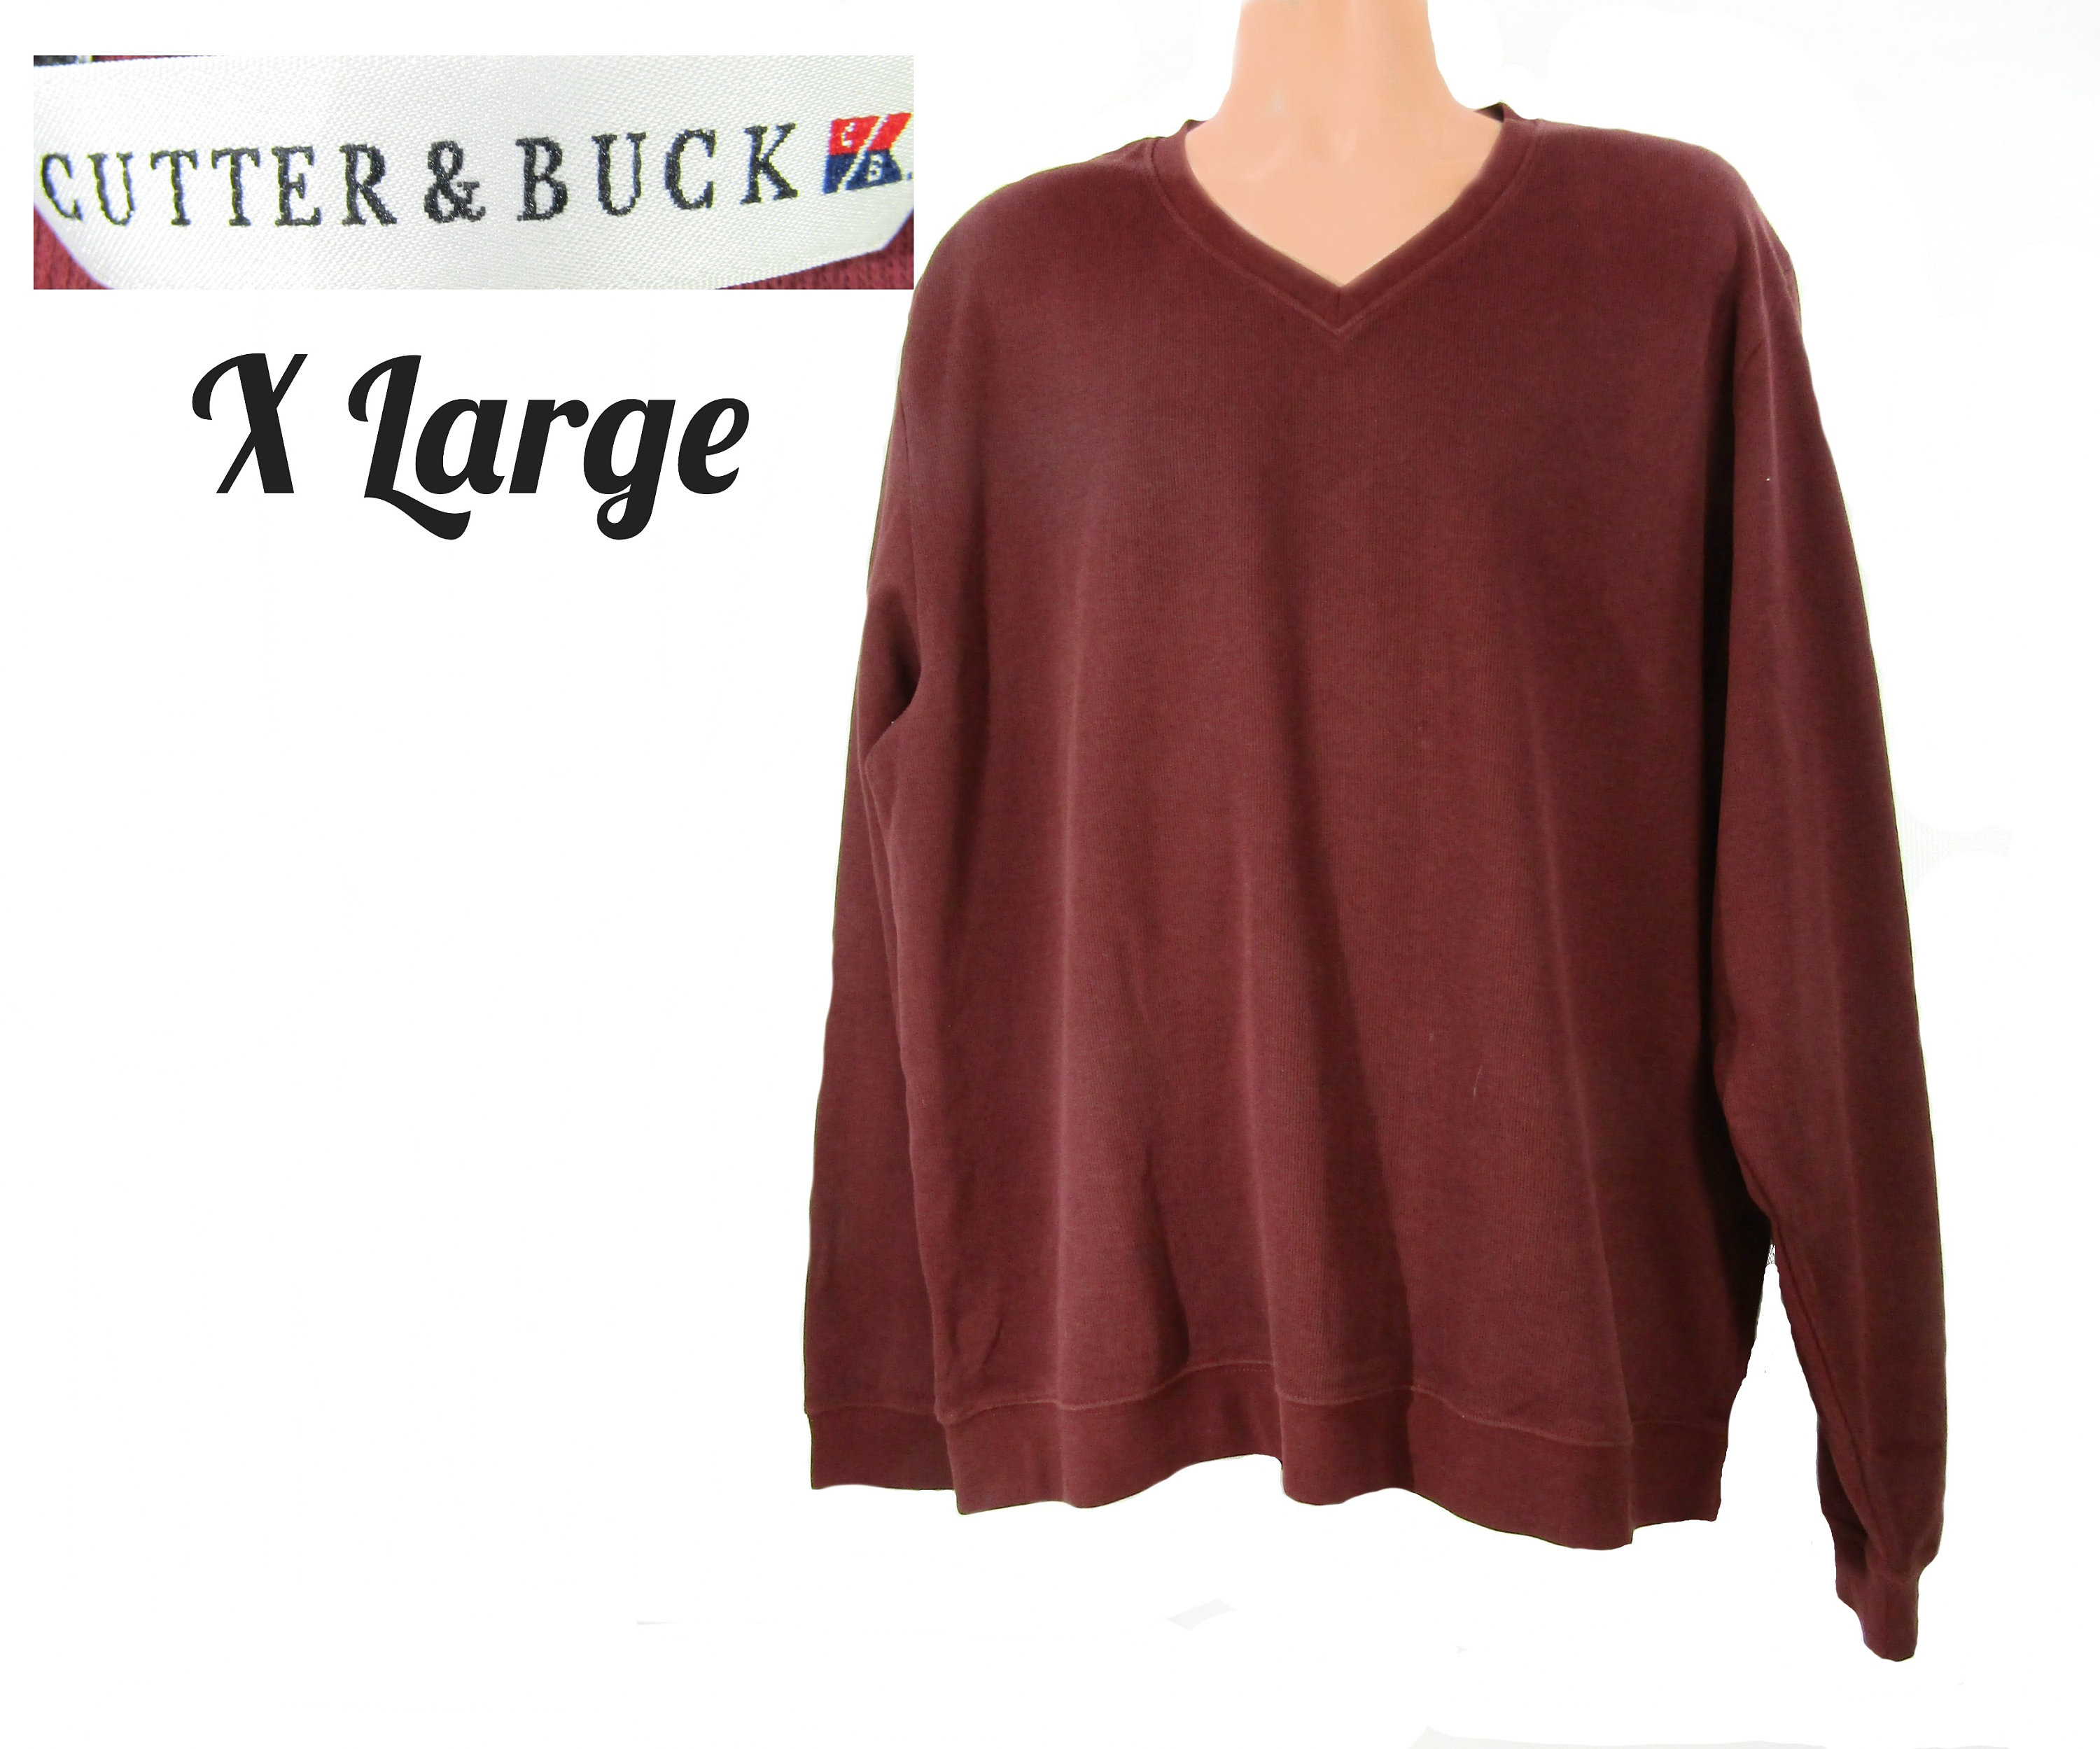 Cutter Buck Sweater - Etsy